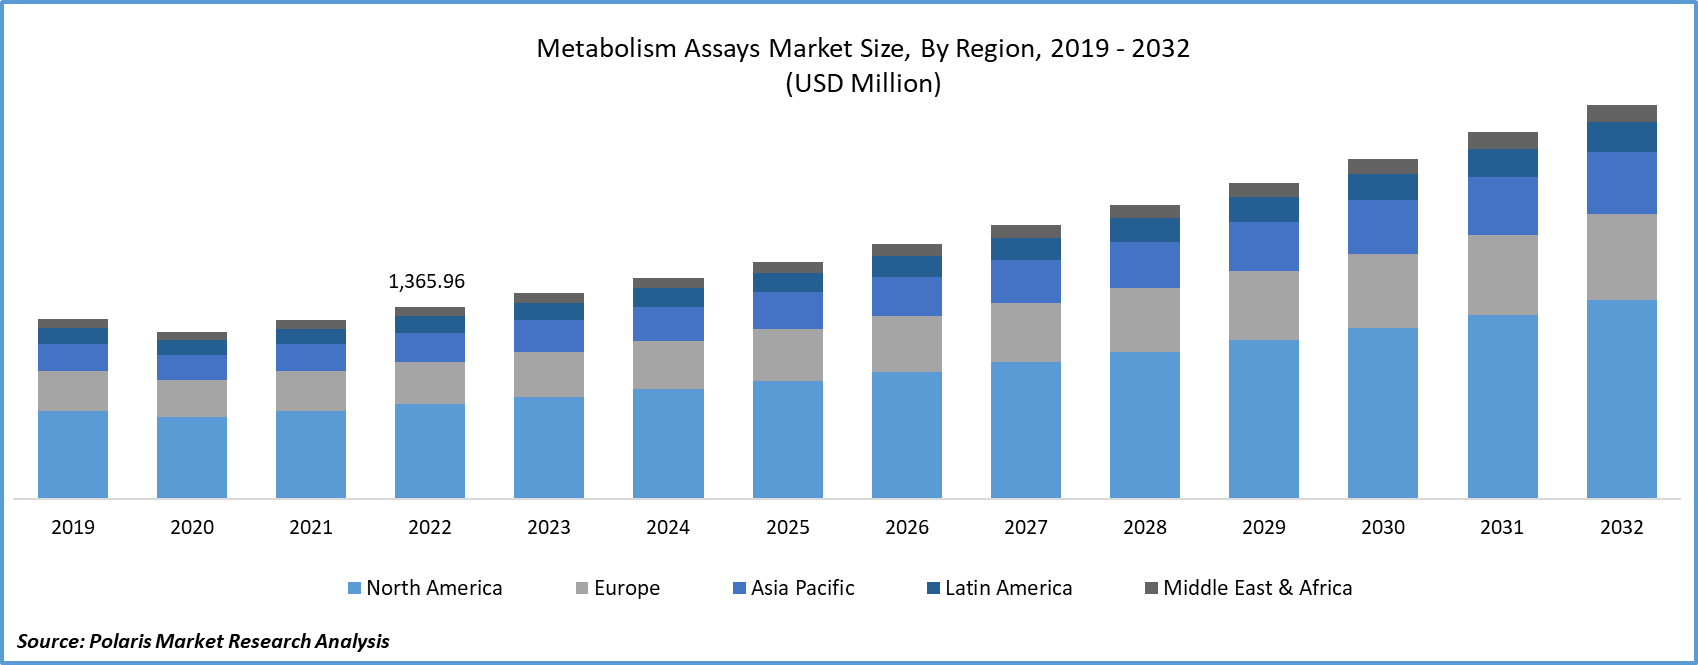 Metabolism Assays Market Size